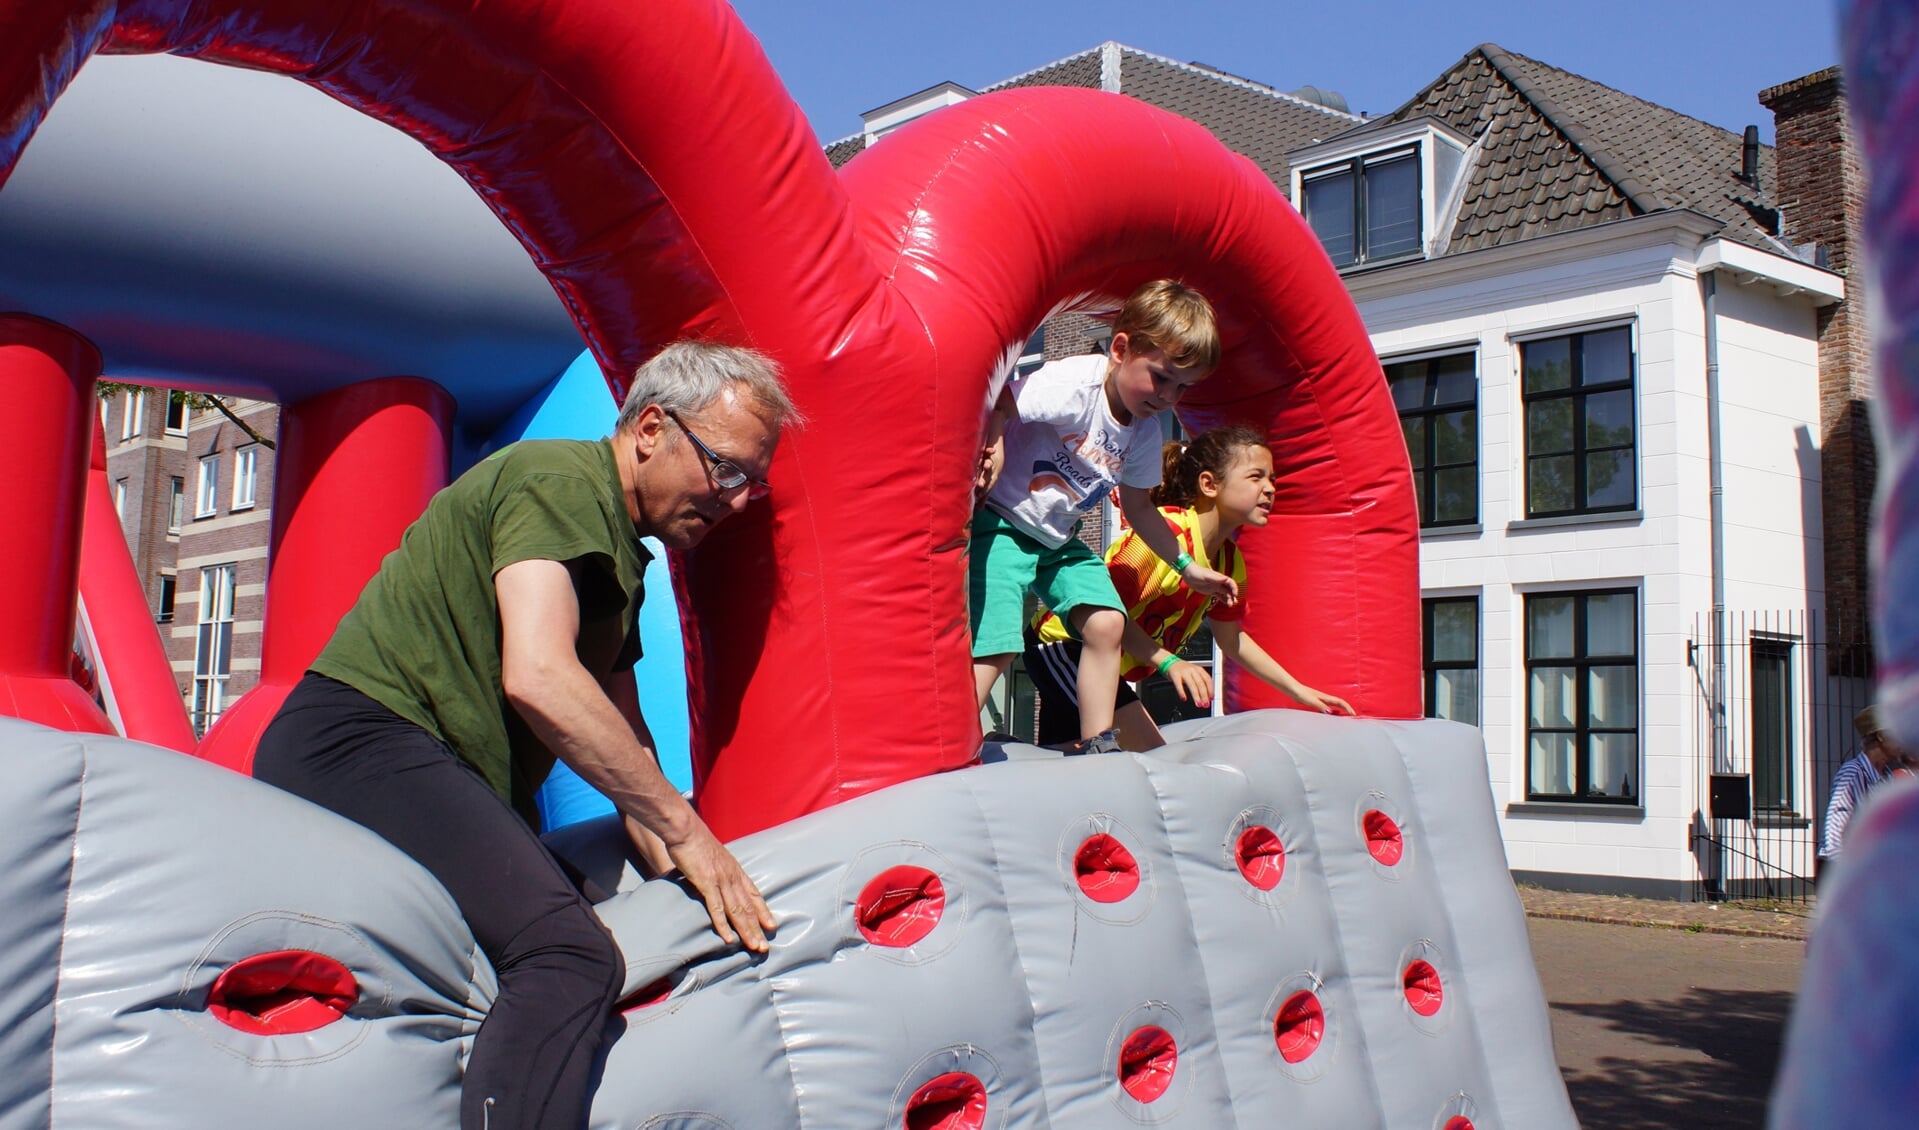 De run over gigantische opblaasobstakels dwars door de Amersfoortse binnenstad is een sportief evenement voor vrienden en families.